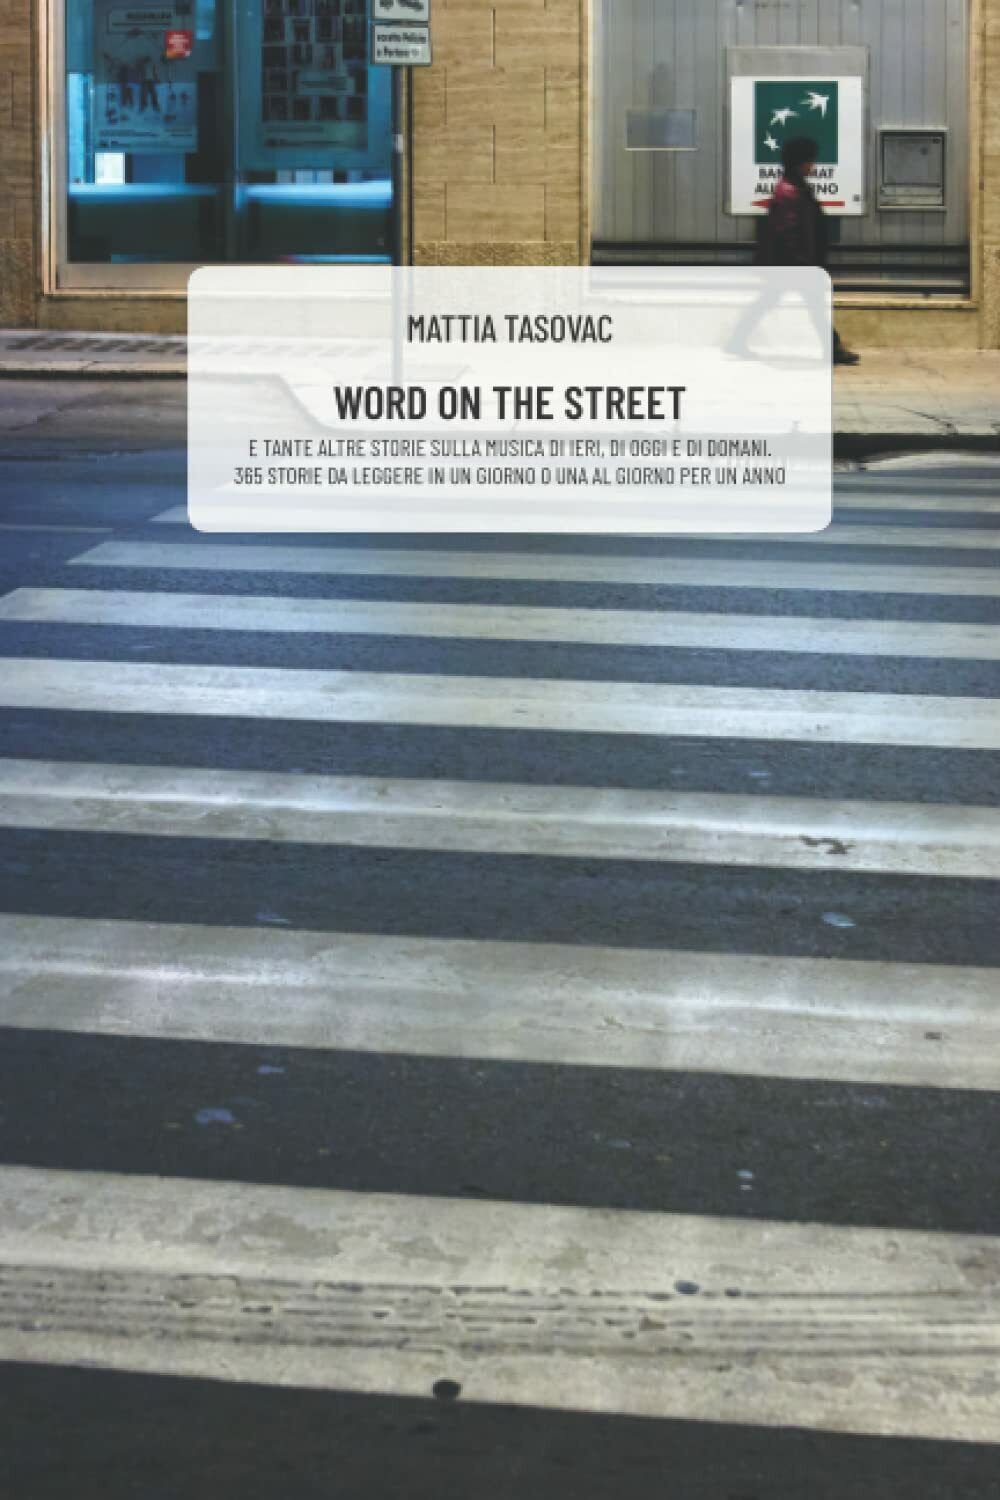 WORD ON THE STREET: E tante altre storie sulla musica di ieri, di oggi e di doma